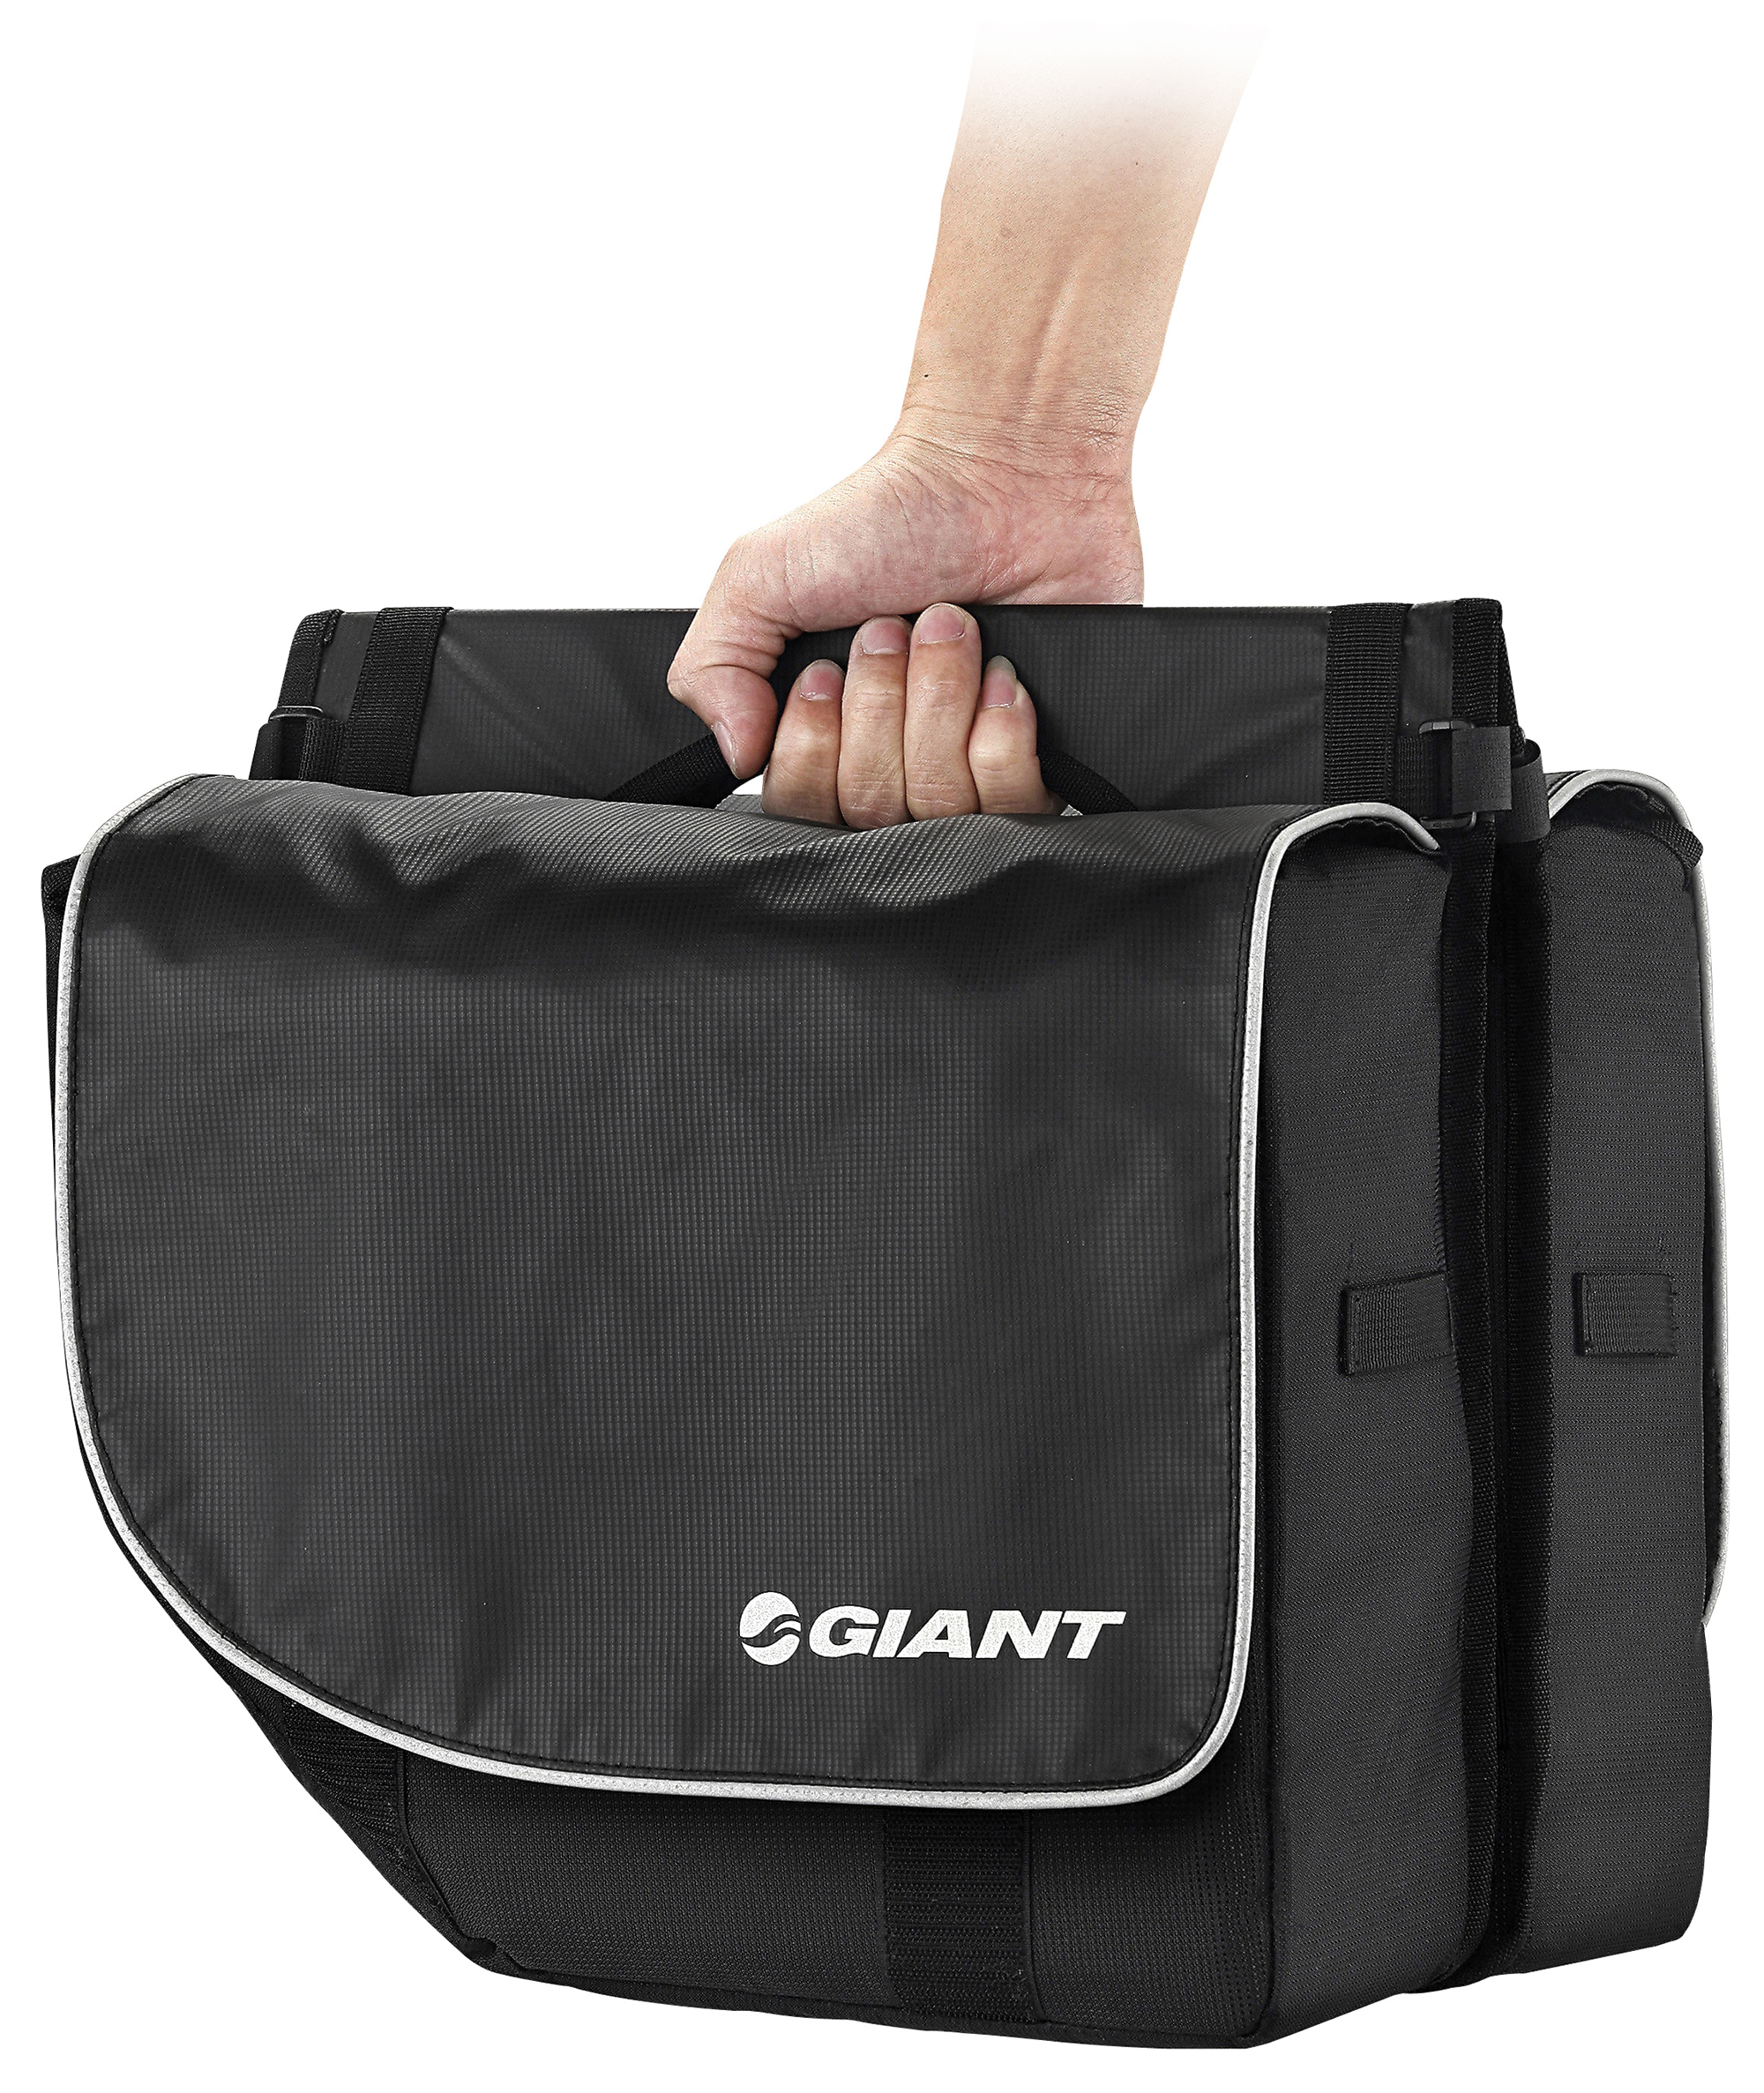 giant city pannier bag